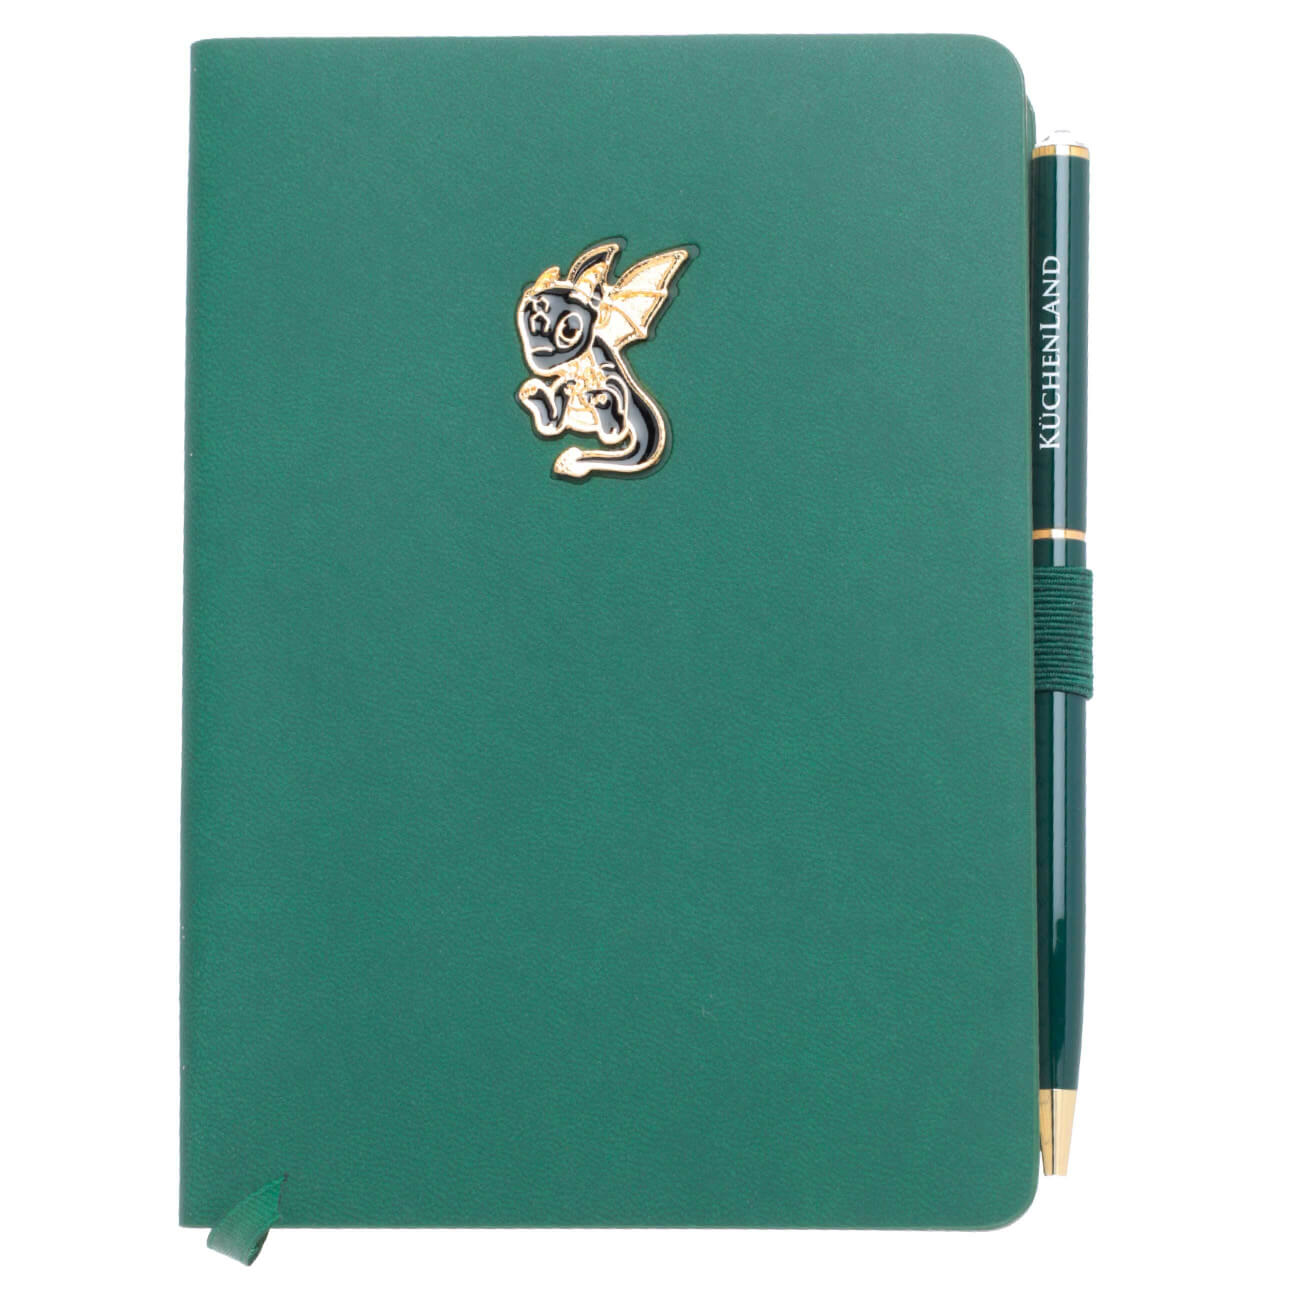 Блокнот для записей, 15х11 см, с ручкой, полиуретан, зеленый, Дракон с крыльями, Dragon spyro блокнот falafel books a5v 50л 80г